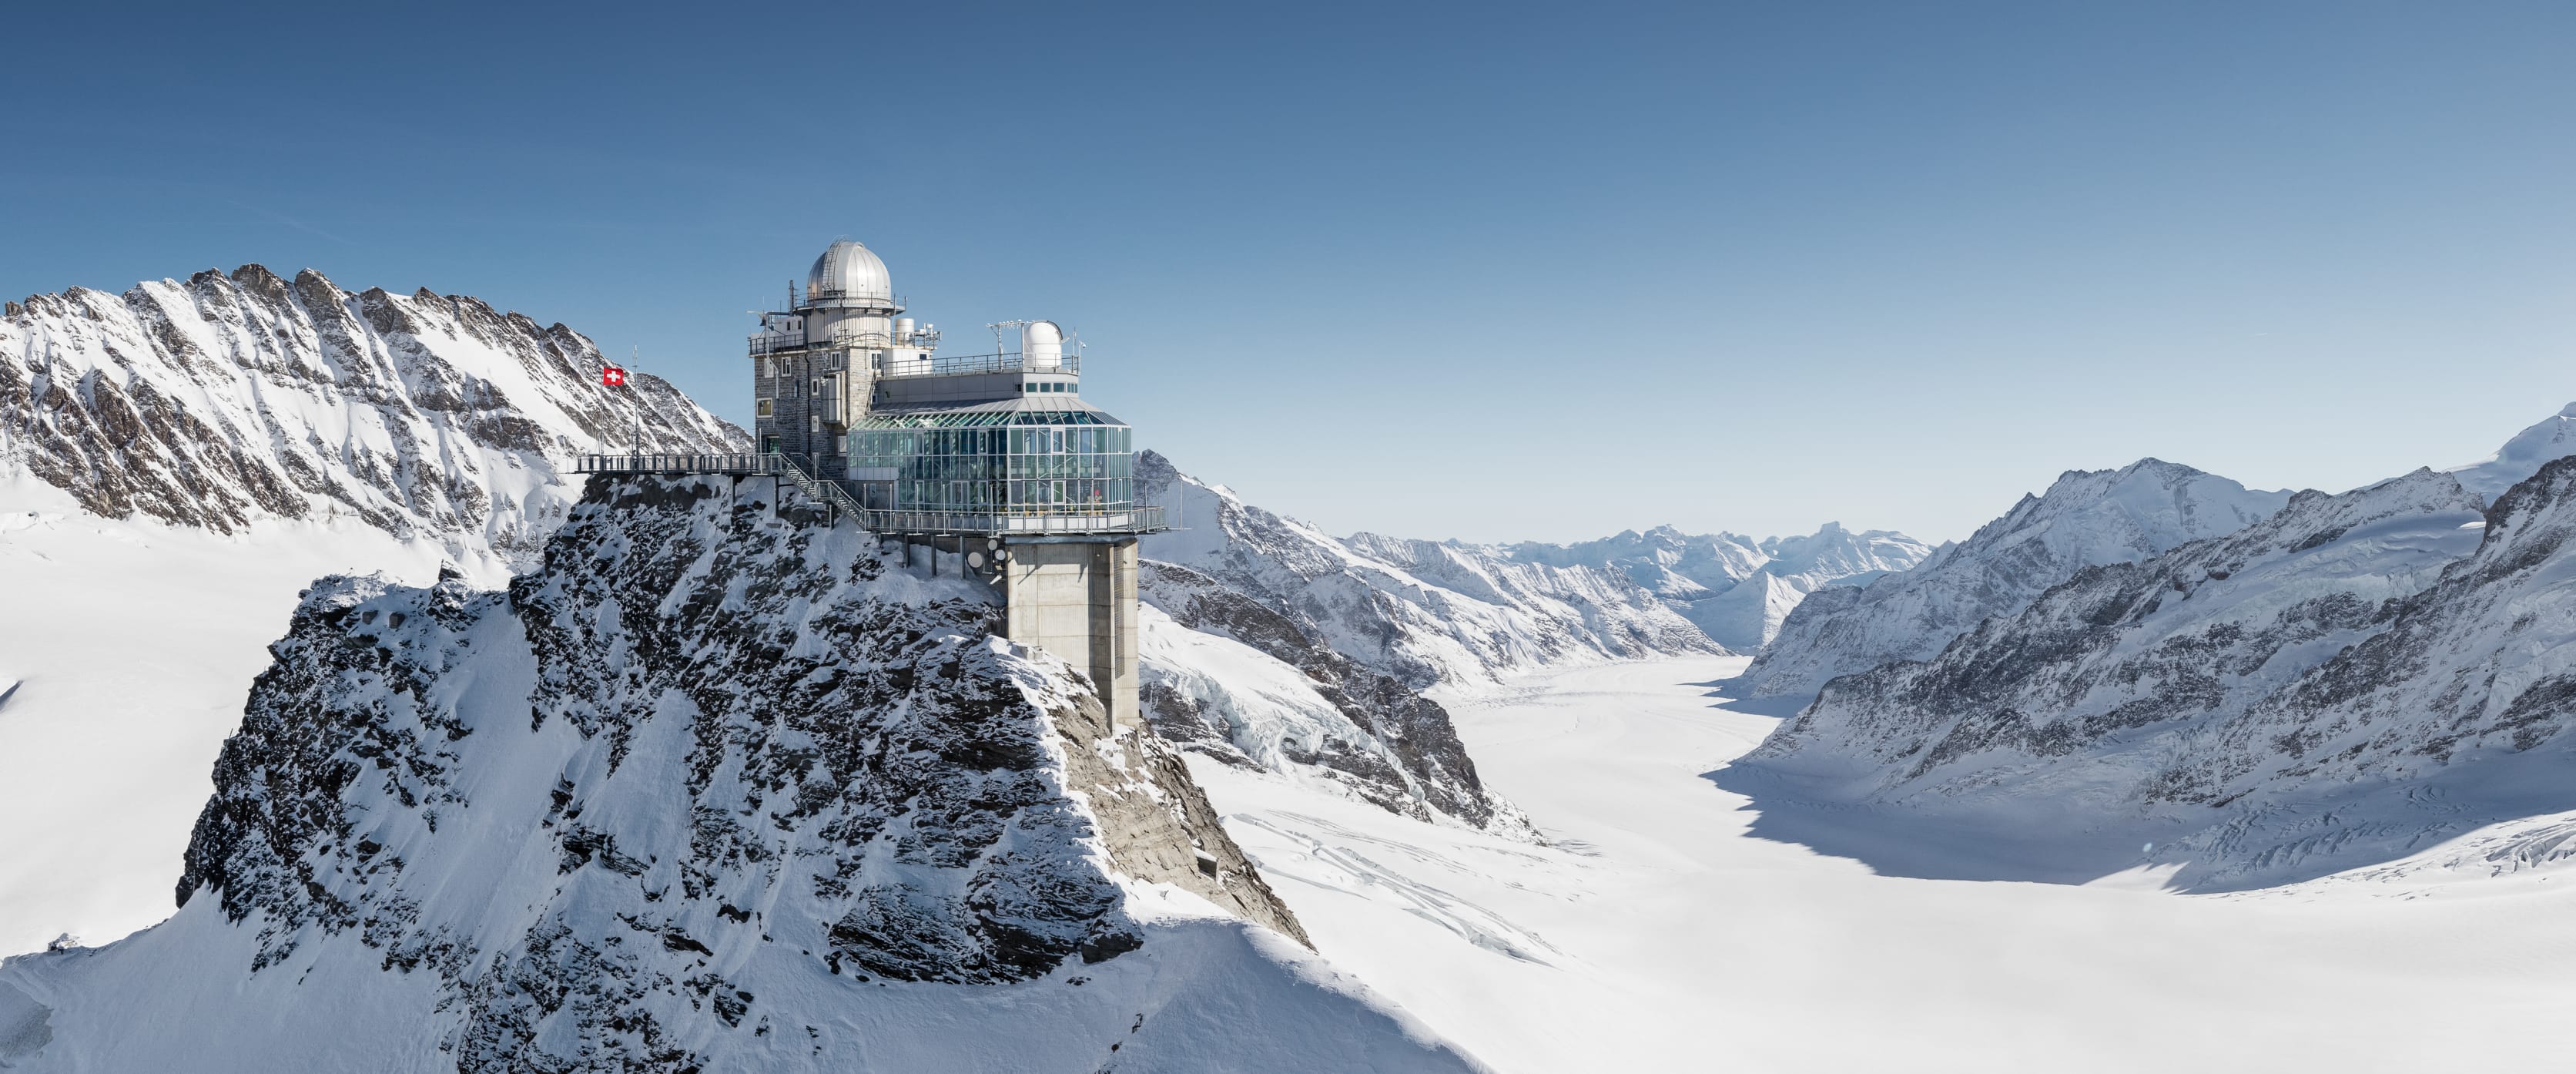 Jungfraujoch – Top of Europe | jungfrau.ch